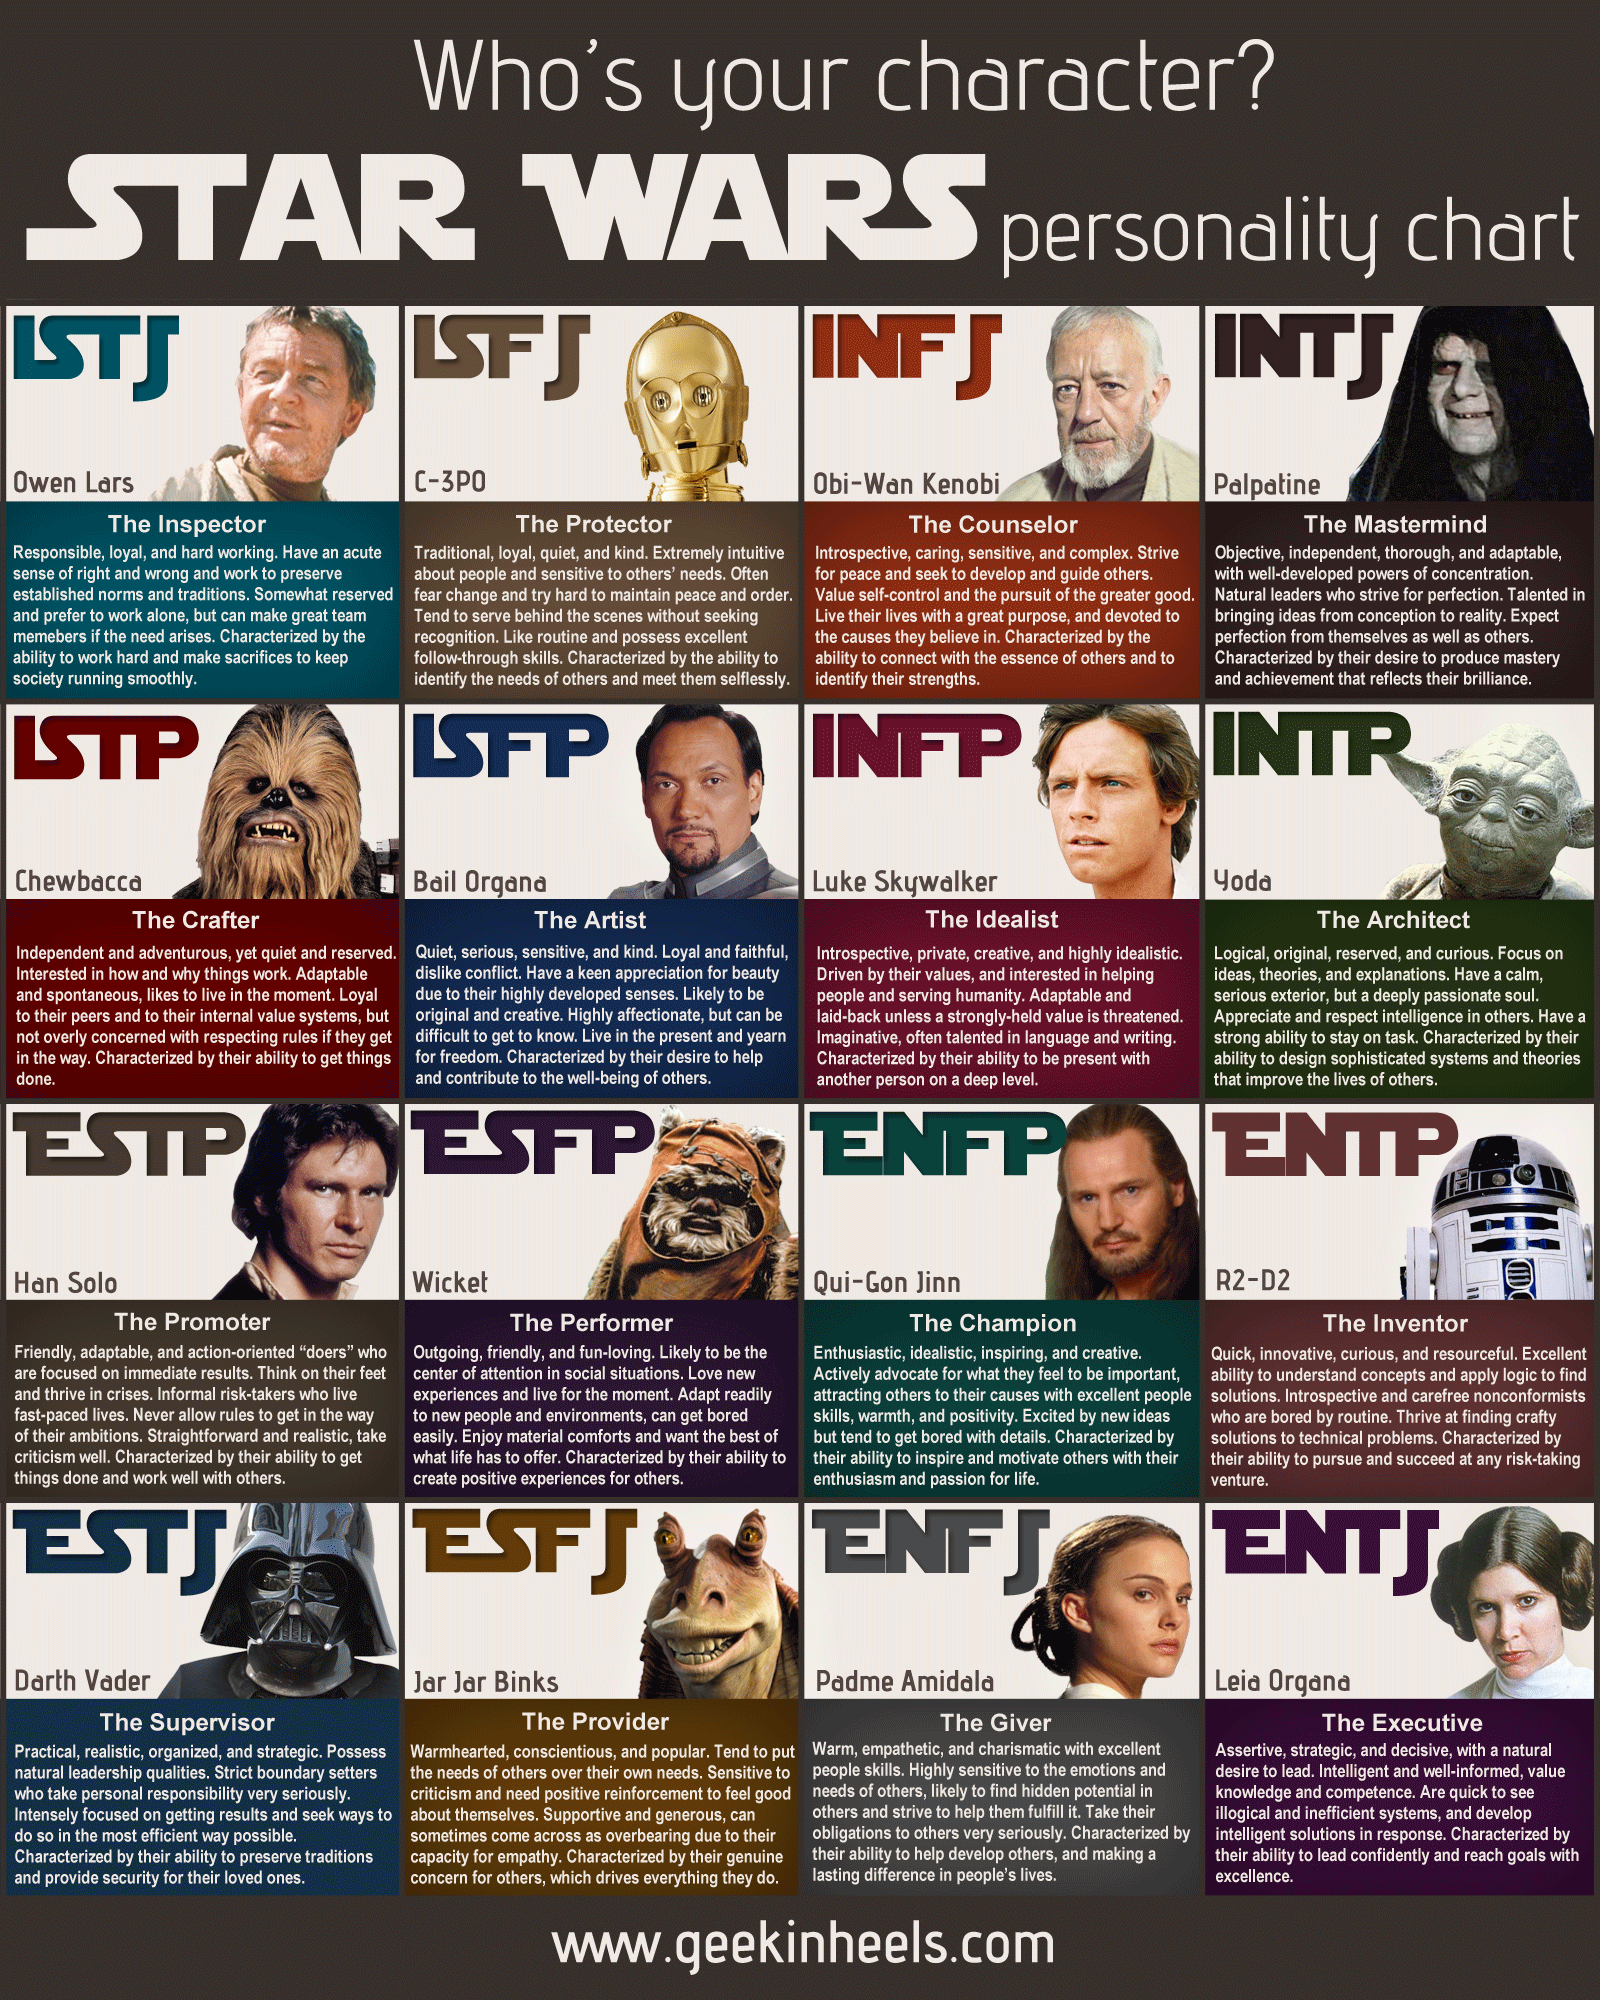 Star Wars MBTI Chart